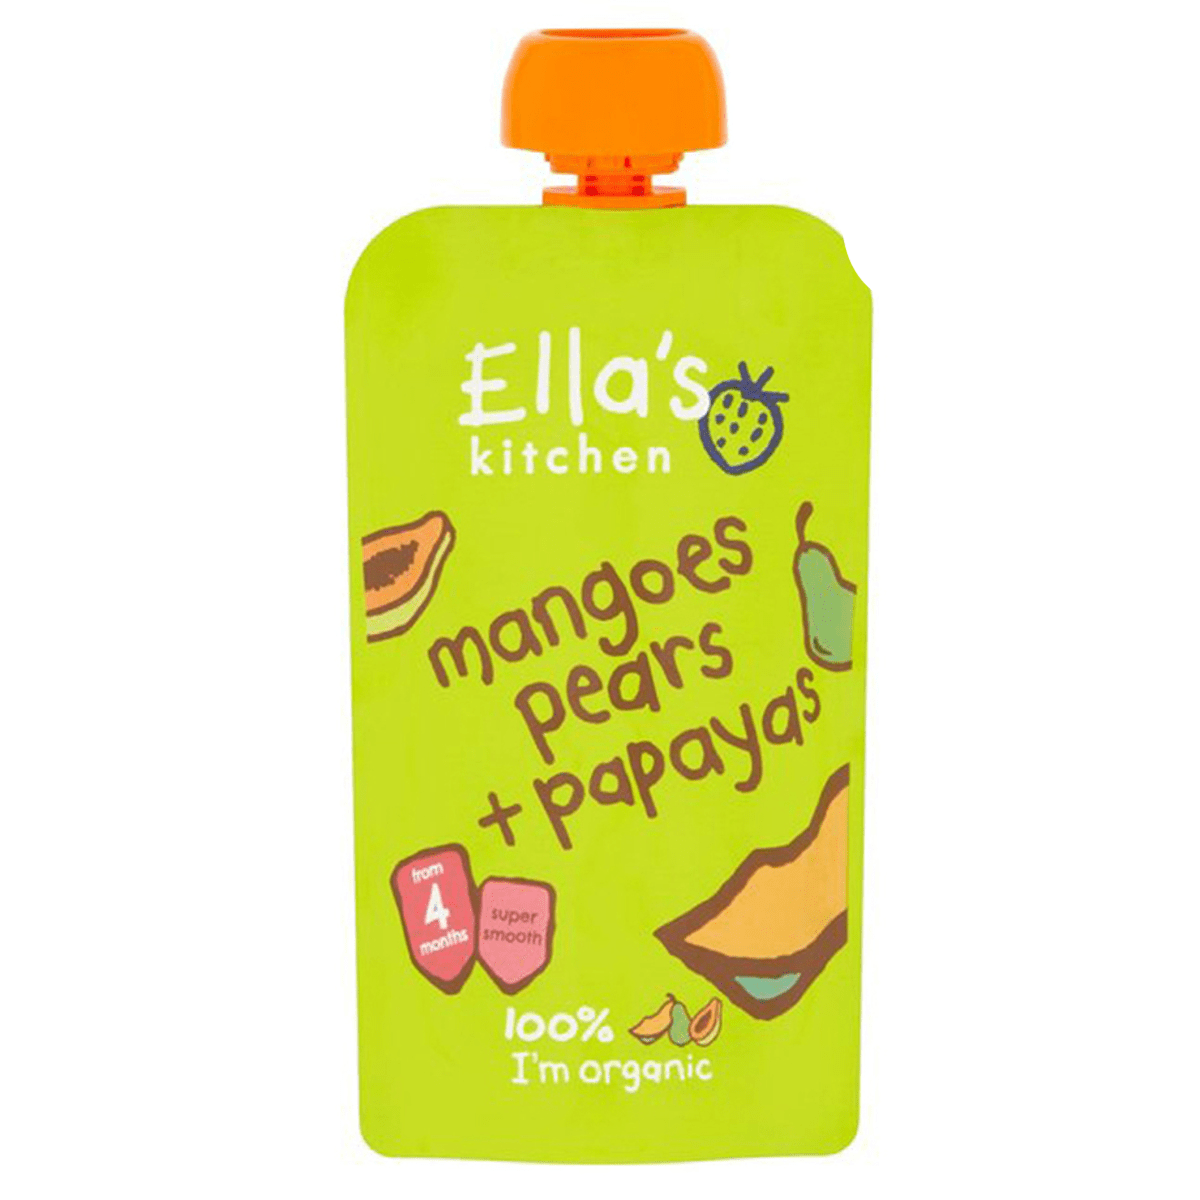 Organic Mangoes Pears + Papayas (7X120g) - Ella's Kitchen